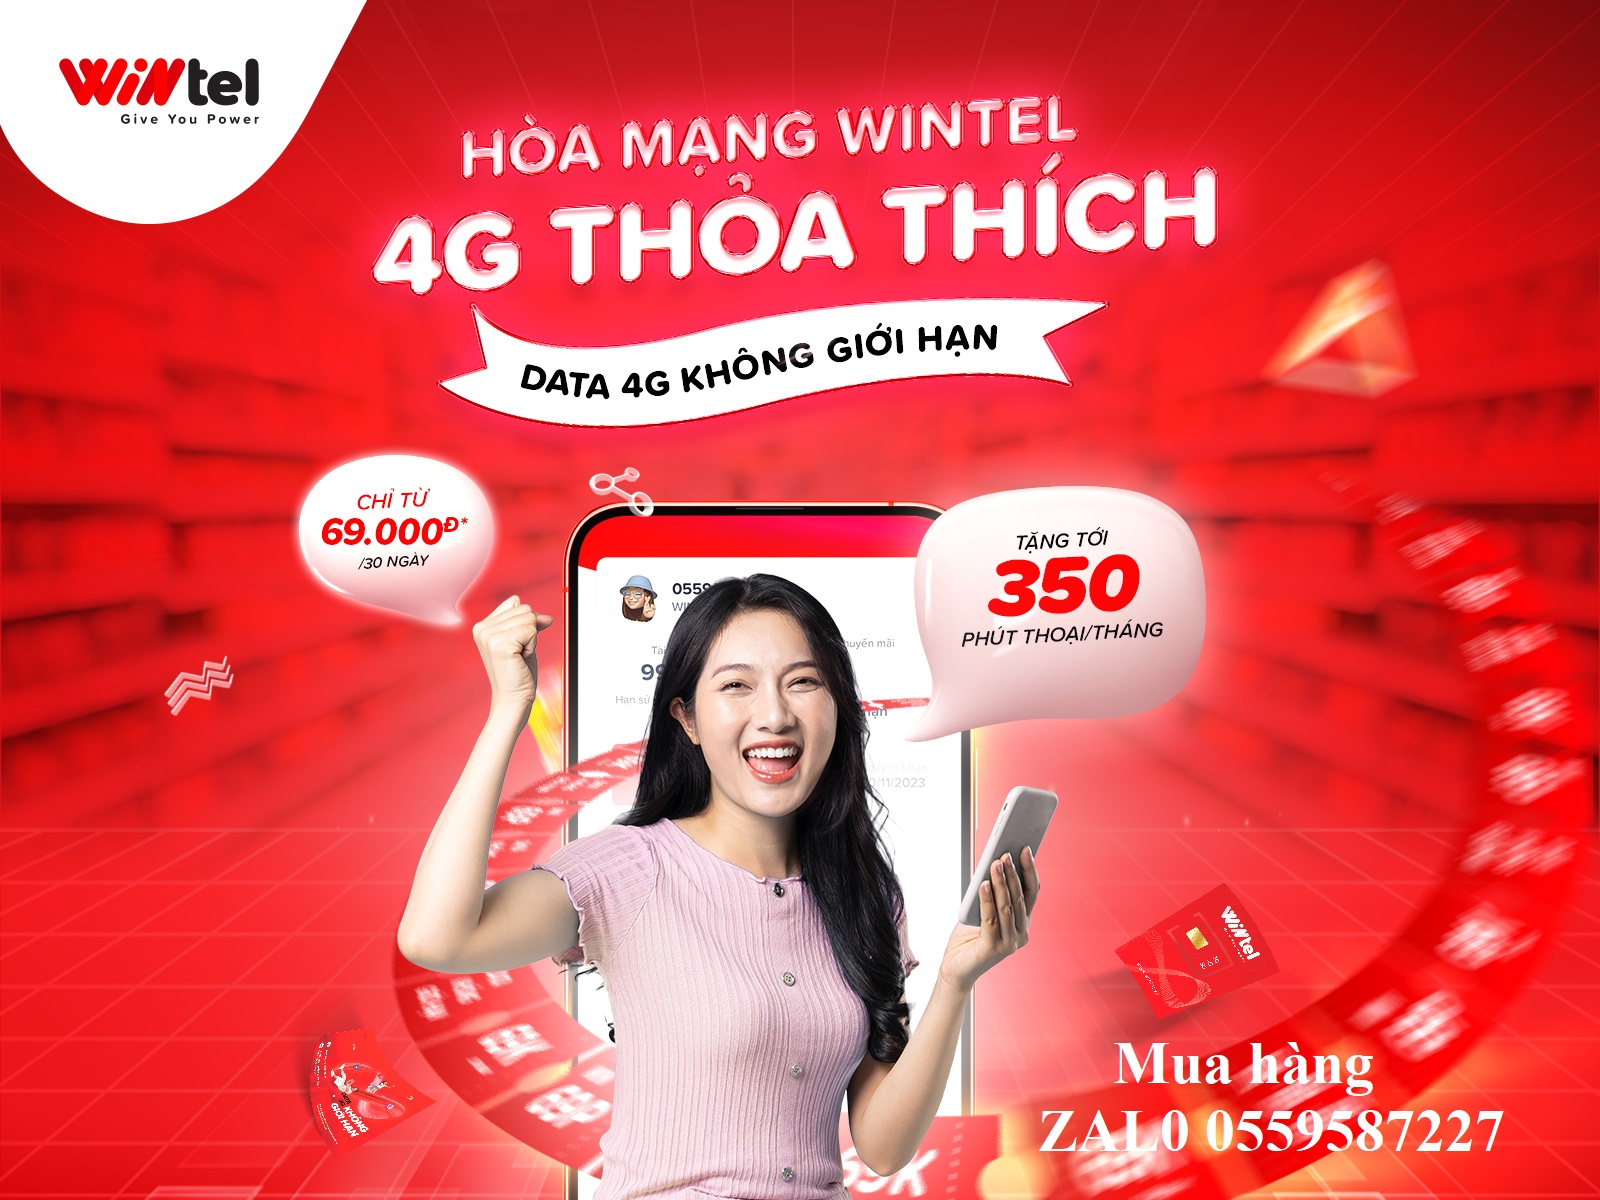 Wintel đã có mặt thêm tại các cửa hàng WinMart+ trên địa bàn Nghệ An, Hà Tĩnh Wintel-win69p